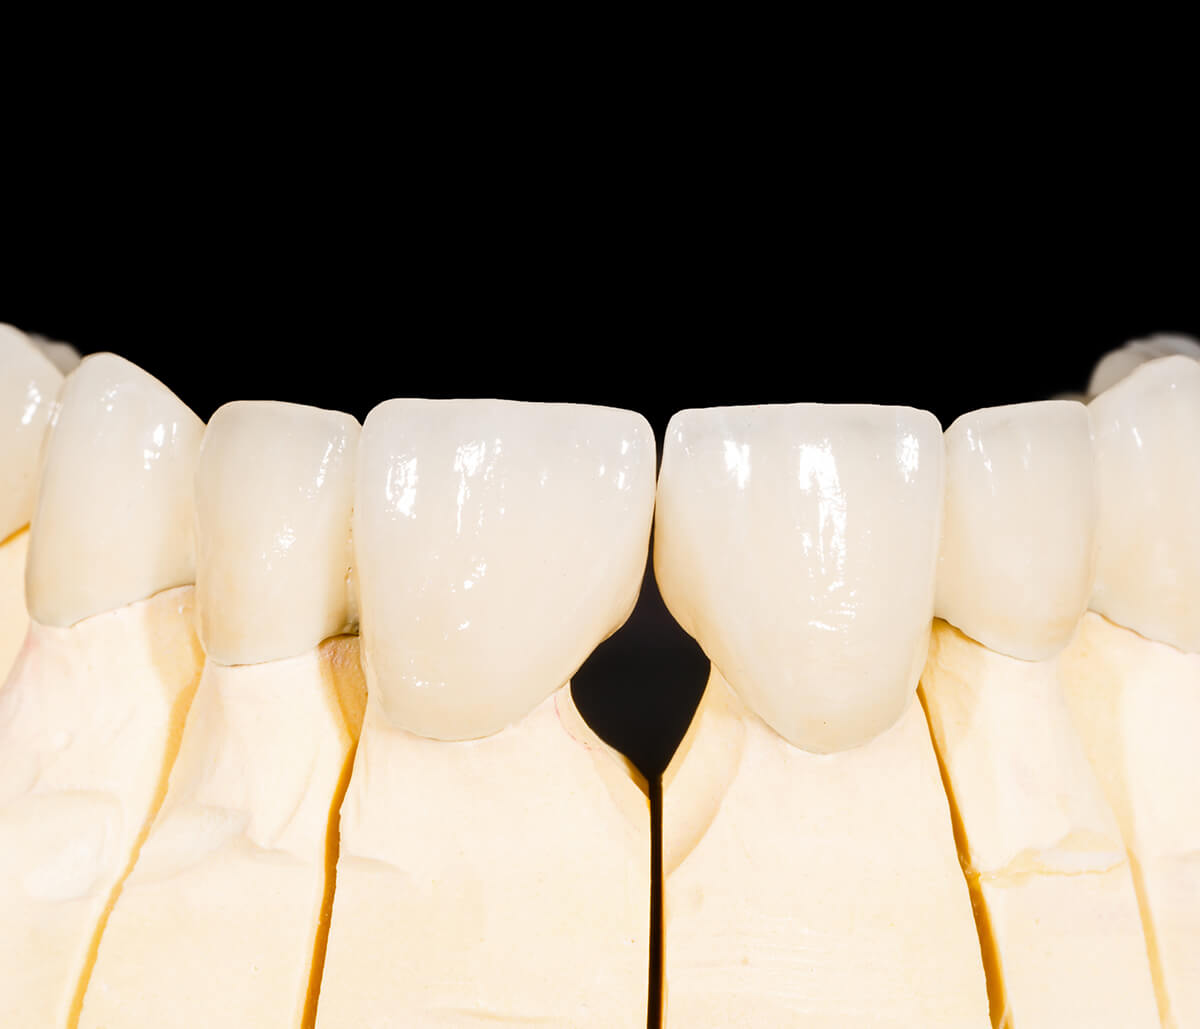 Cost of Zirconia Tooth Replacement Implants in Turlock CA Area